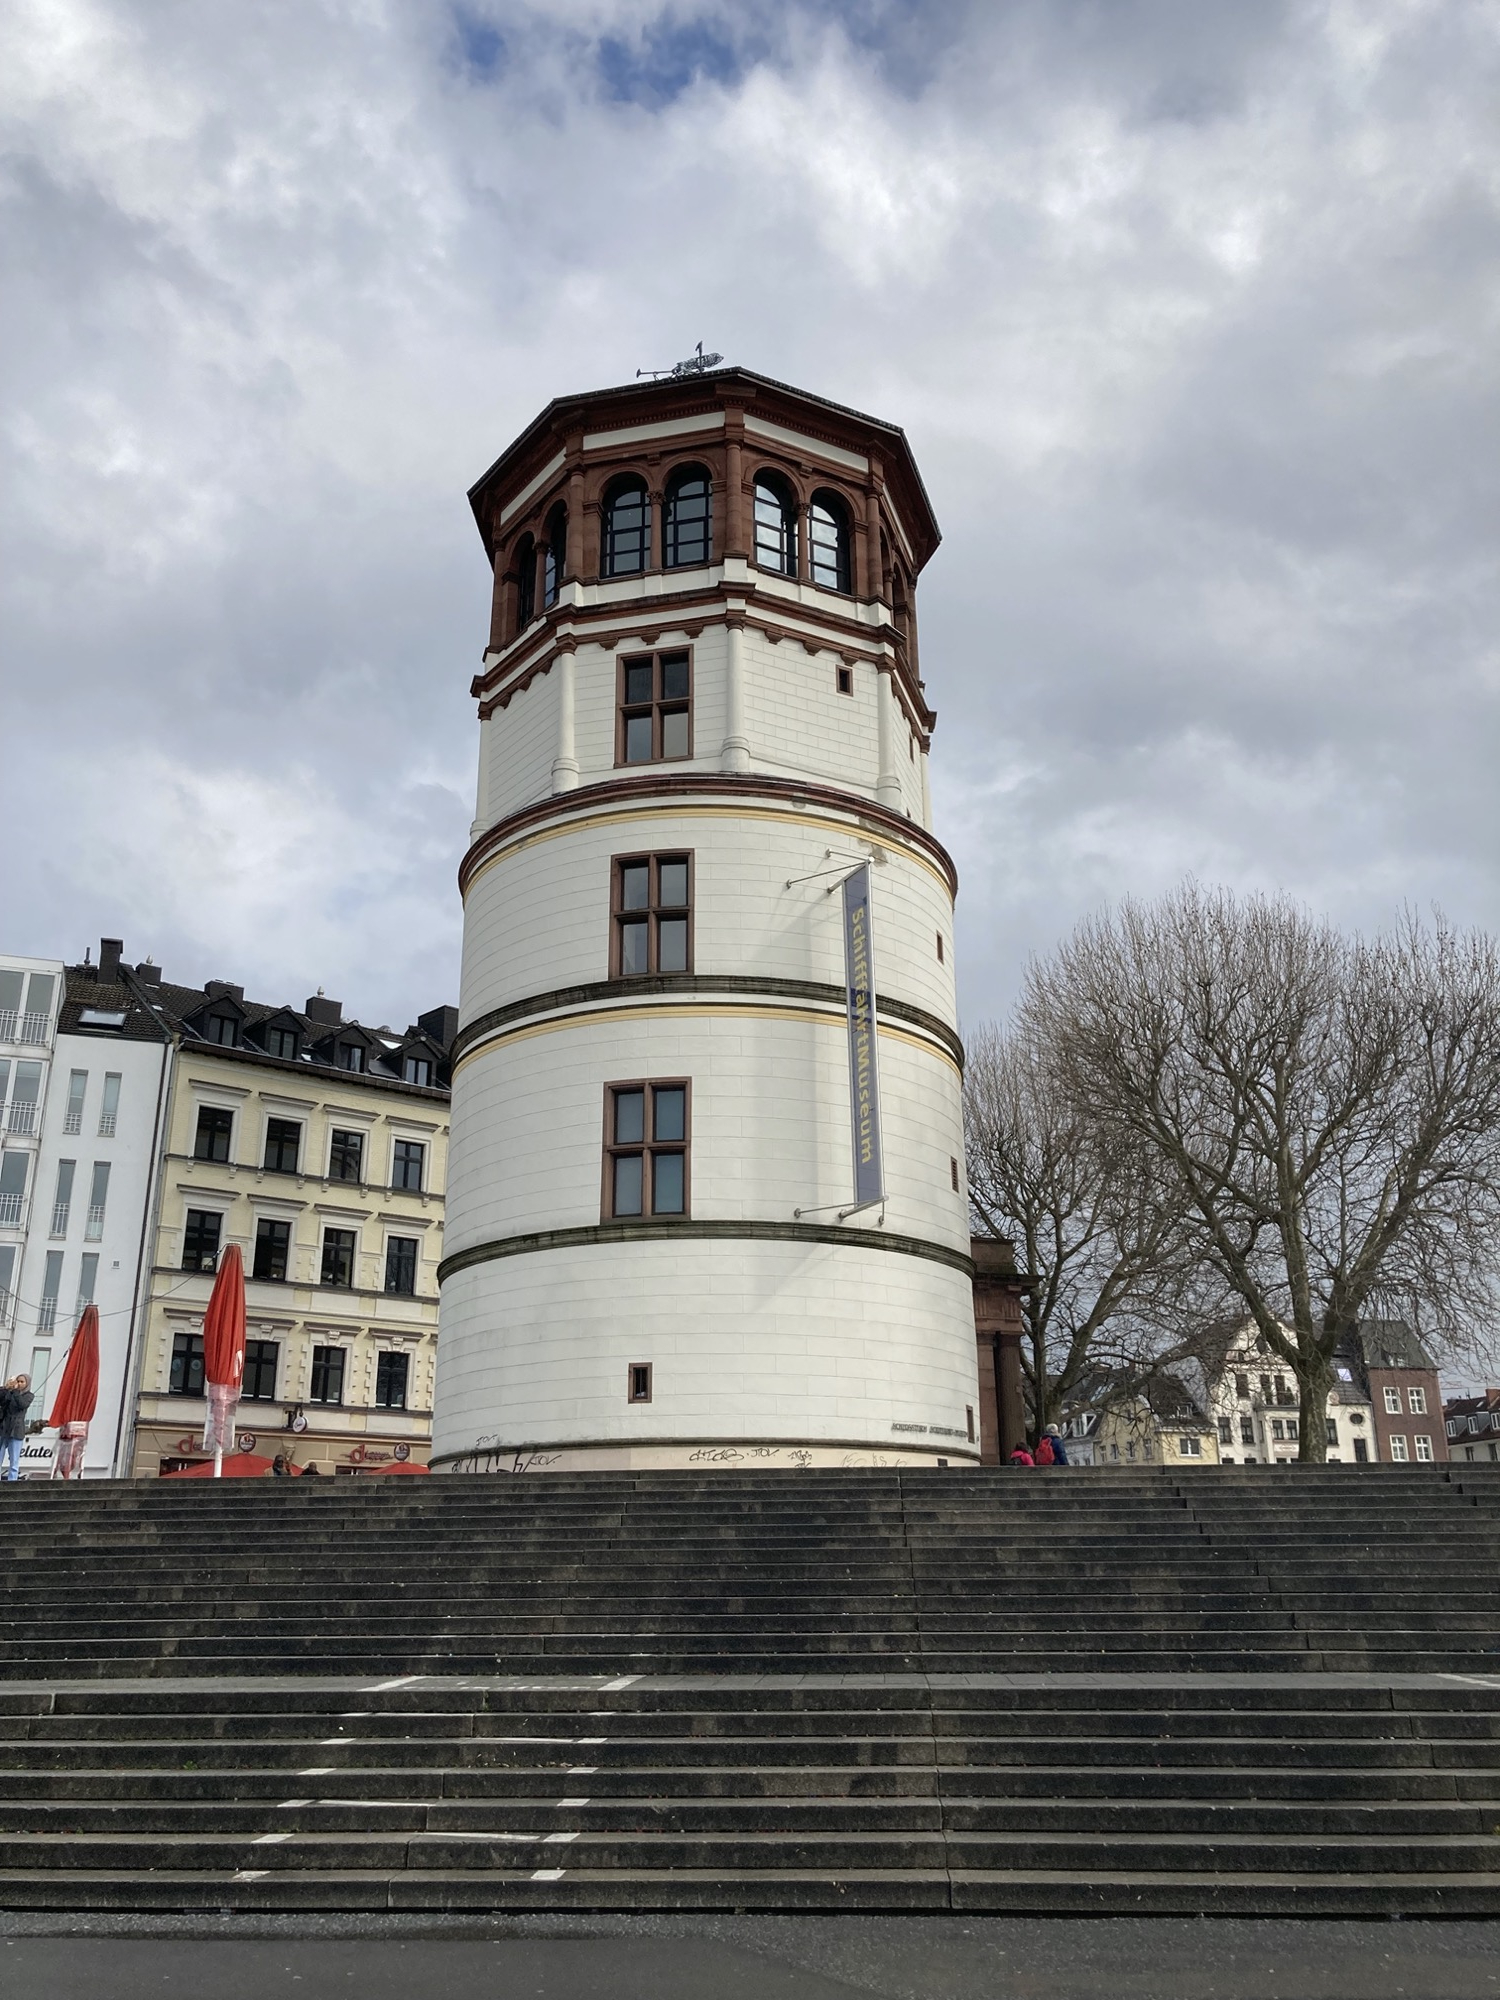 Schloss-Turm am Burgplatz von der Rhein-Promenade aus gesehen, der Turm hat fünf Stockwerke, die unteren sind hell bemalt, ein Transparent weist auf das Schifffahrtsmuseum hin, das oberste Stockwerk ist aus braunen Ziegeln, hat rundherum Fenster und lässt den Turm an einen Leuchtturm erinnern